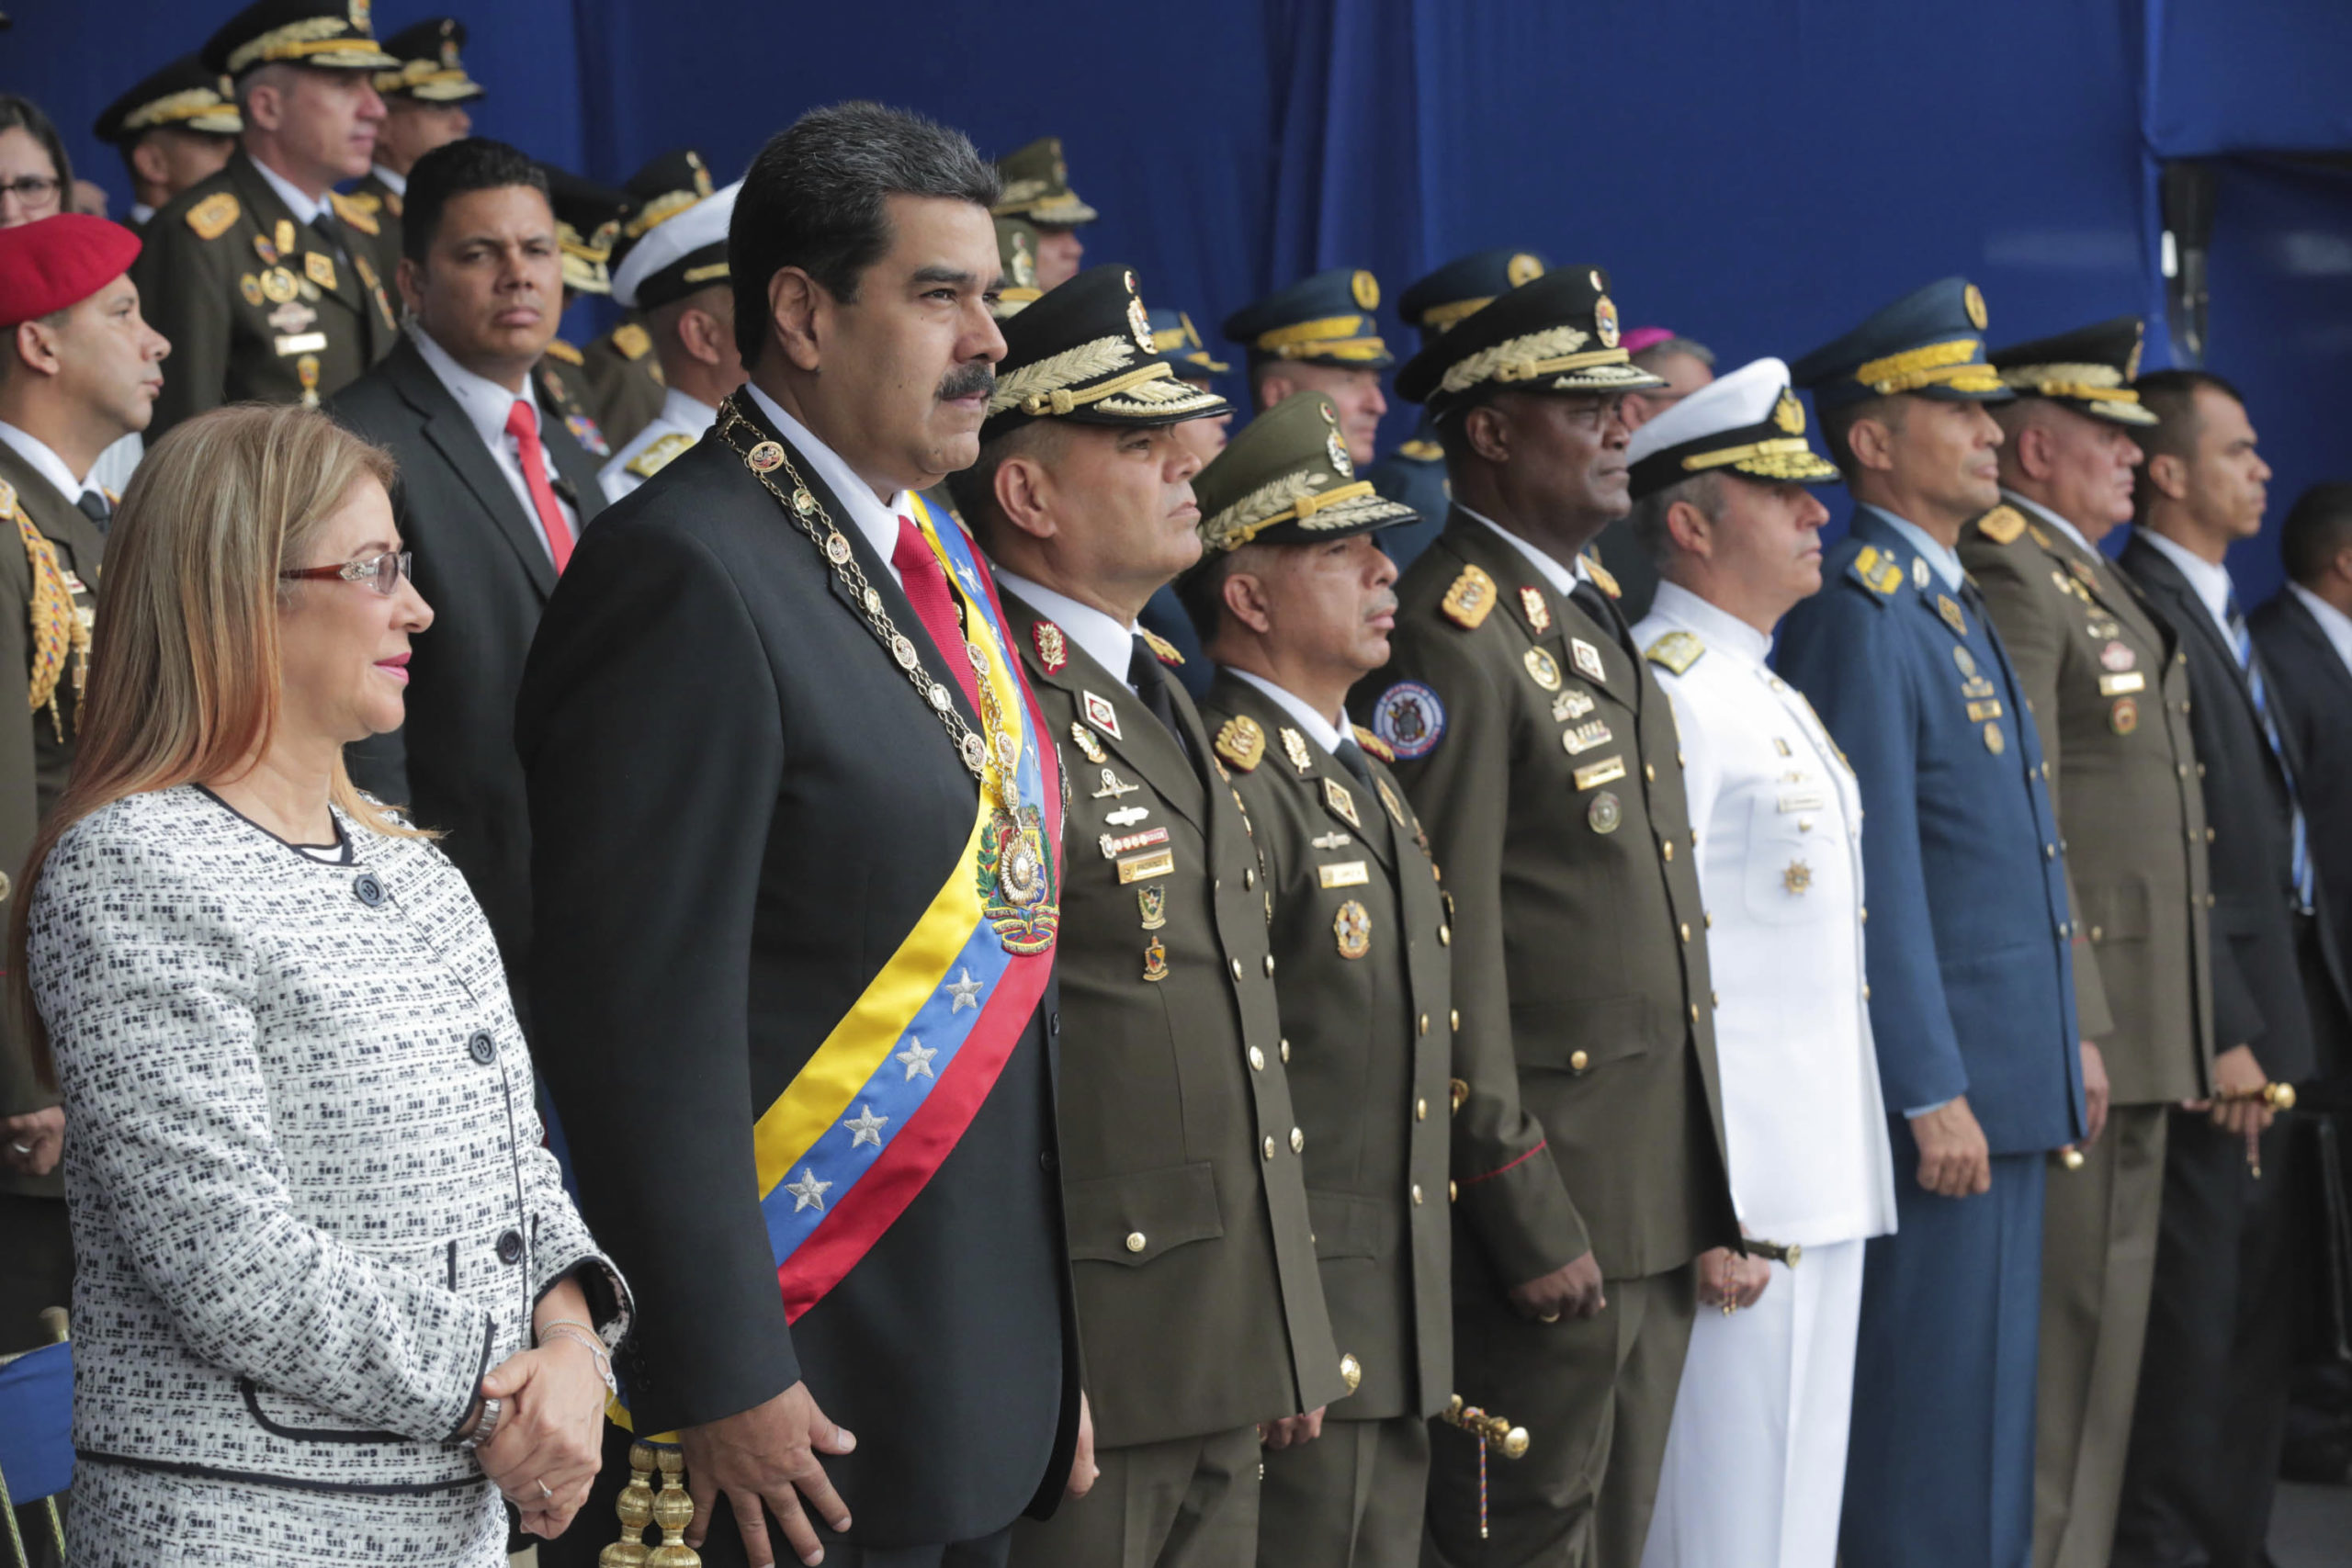 ANÁLISIS: Nicolás Maduro es un criminal de lesa humanidad